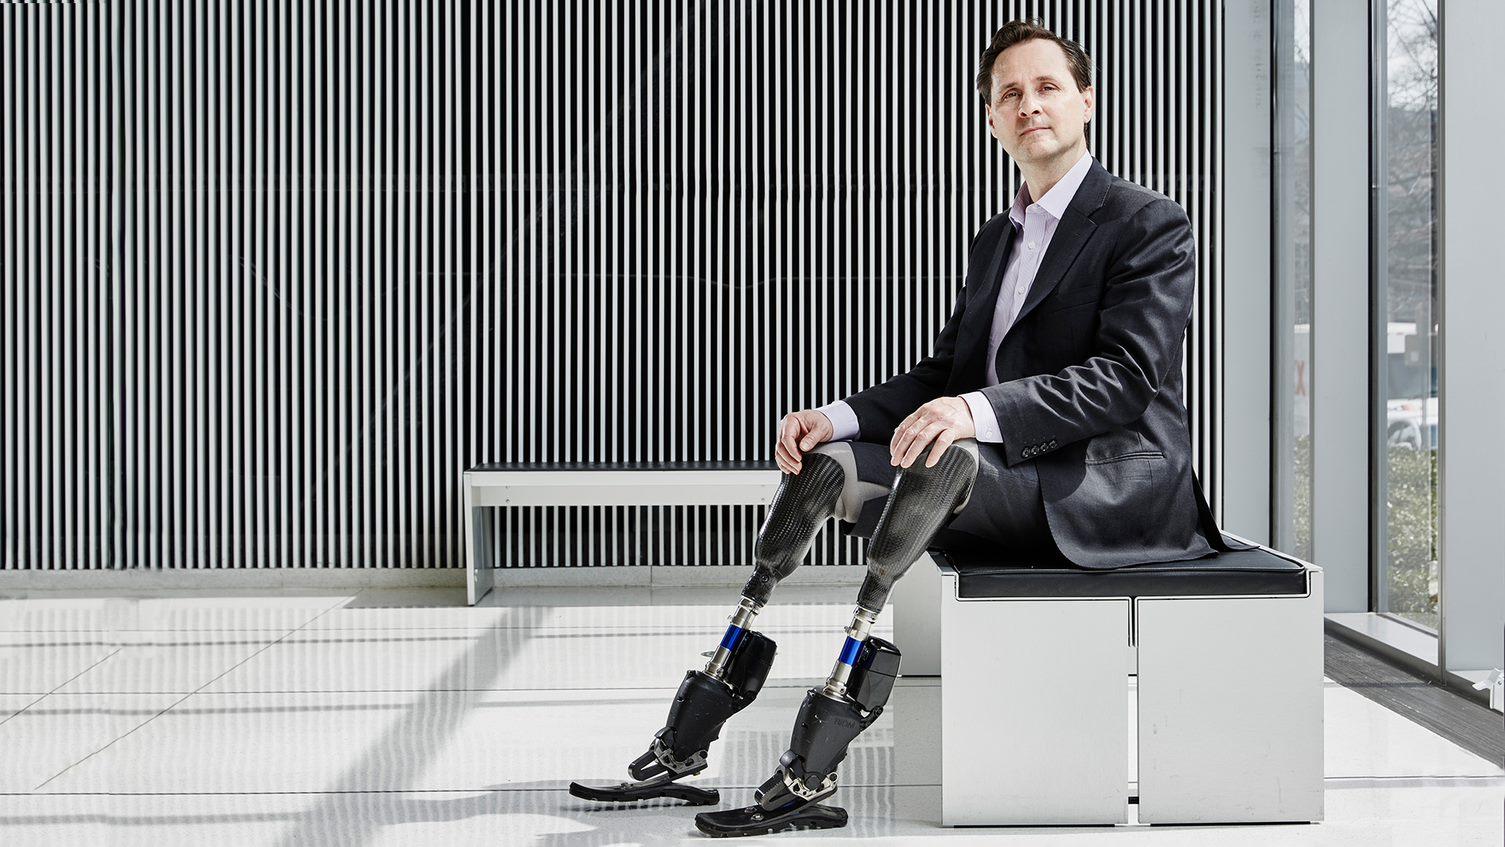 Erfinder mit biomechatronischen Beinen sitzend